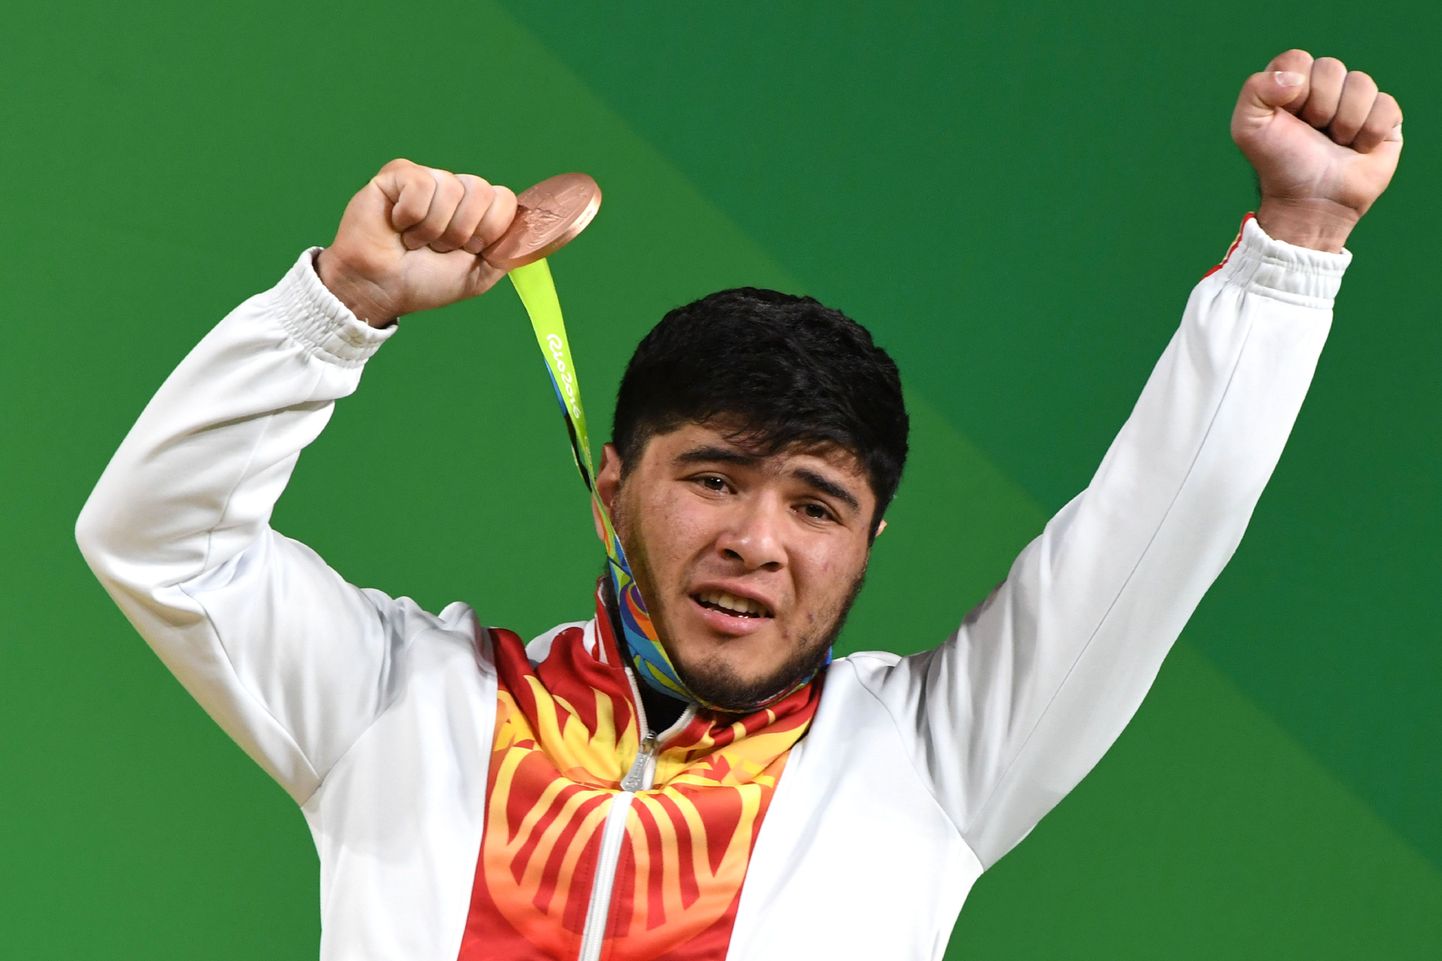 Иззат Артыков с медалью Рио-2016.